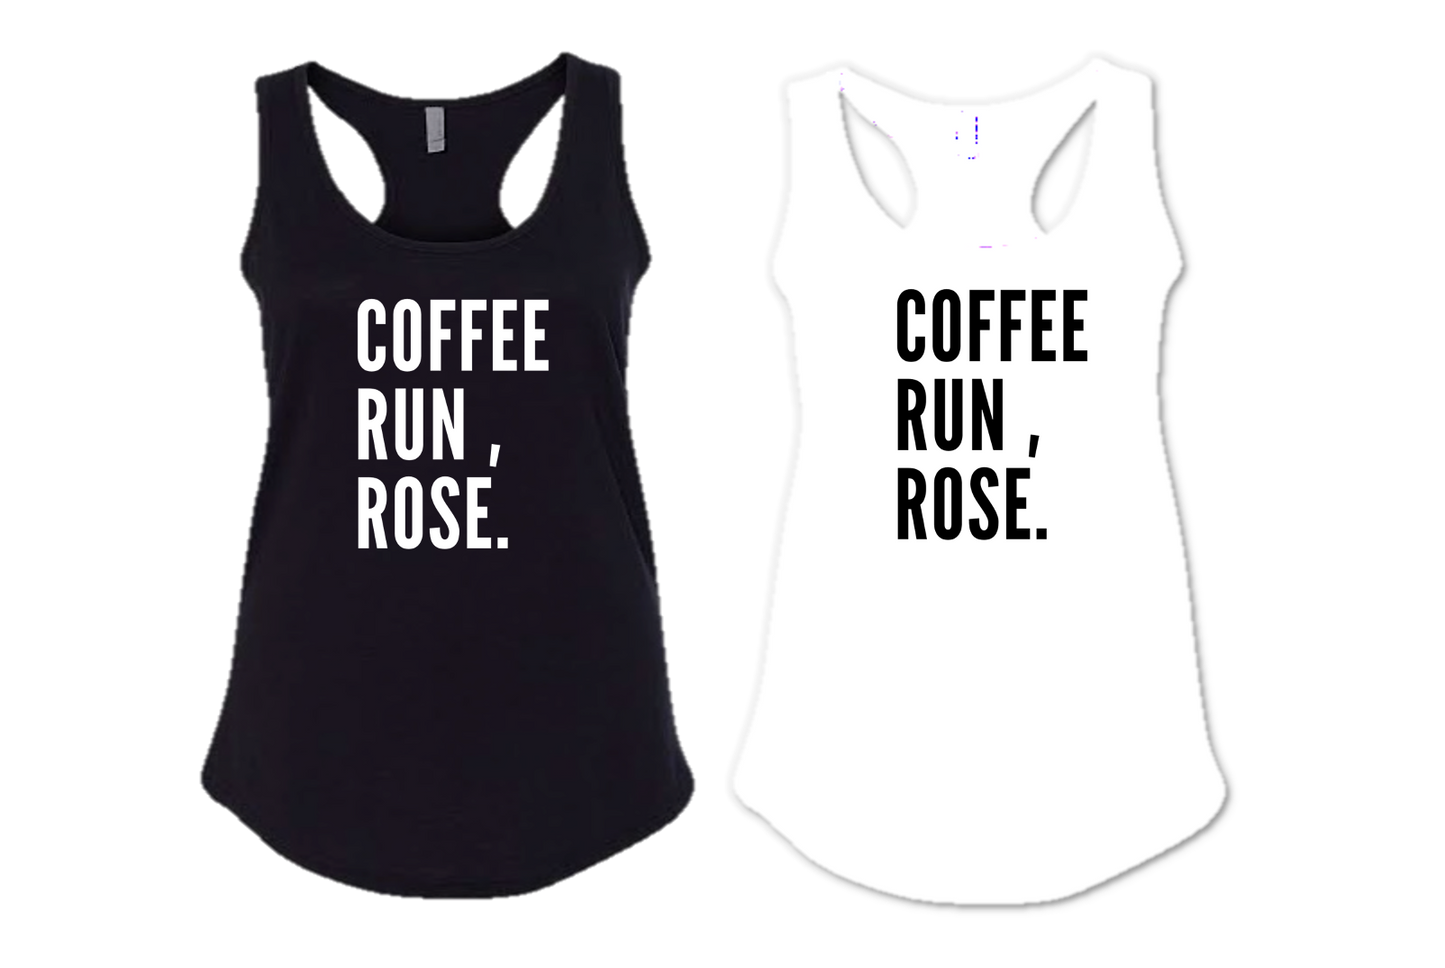 COFFEE RUN ROSE.